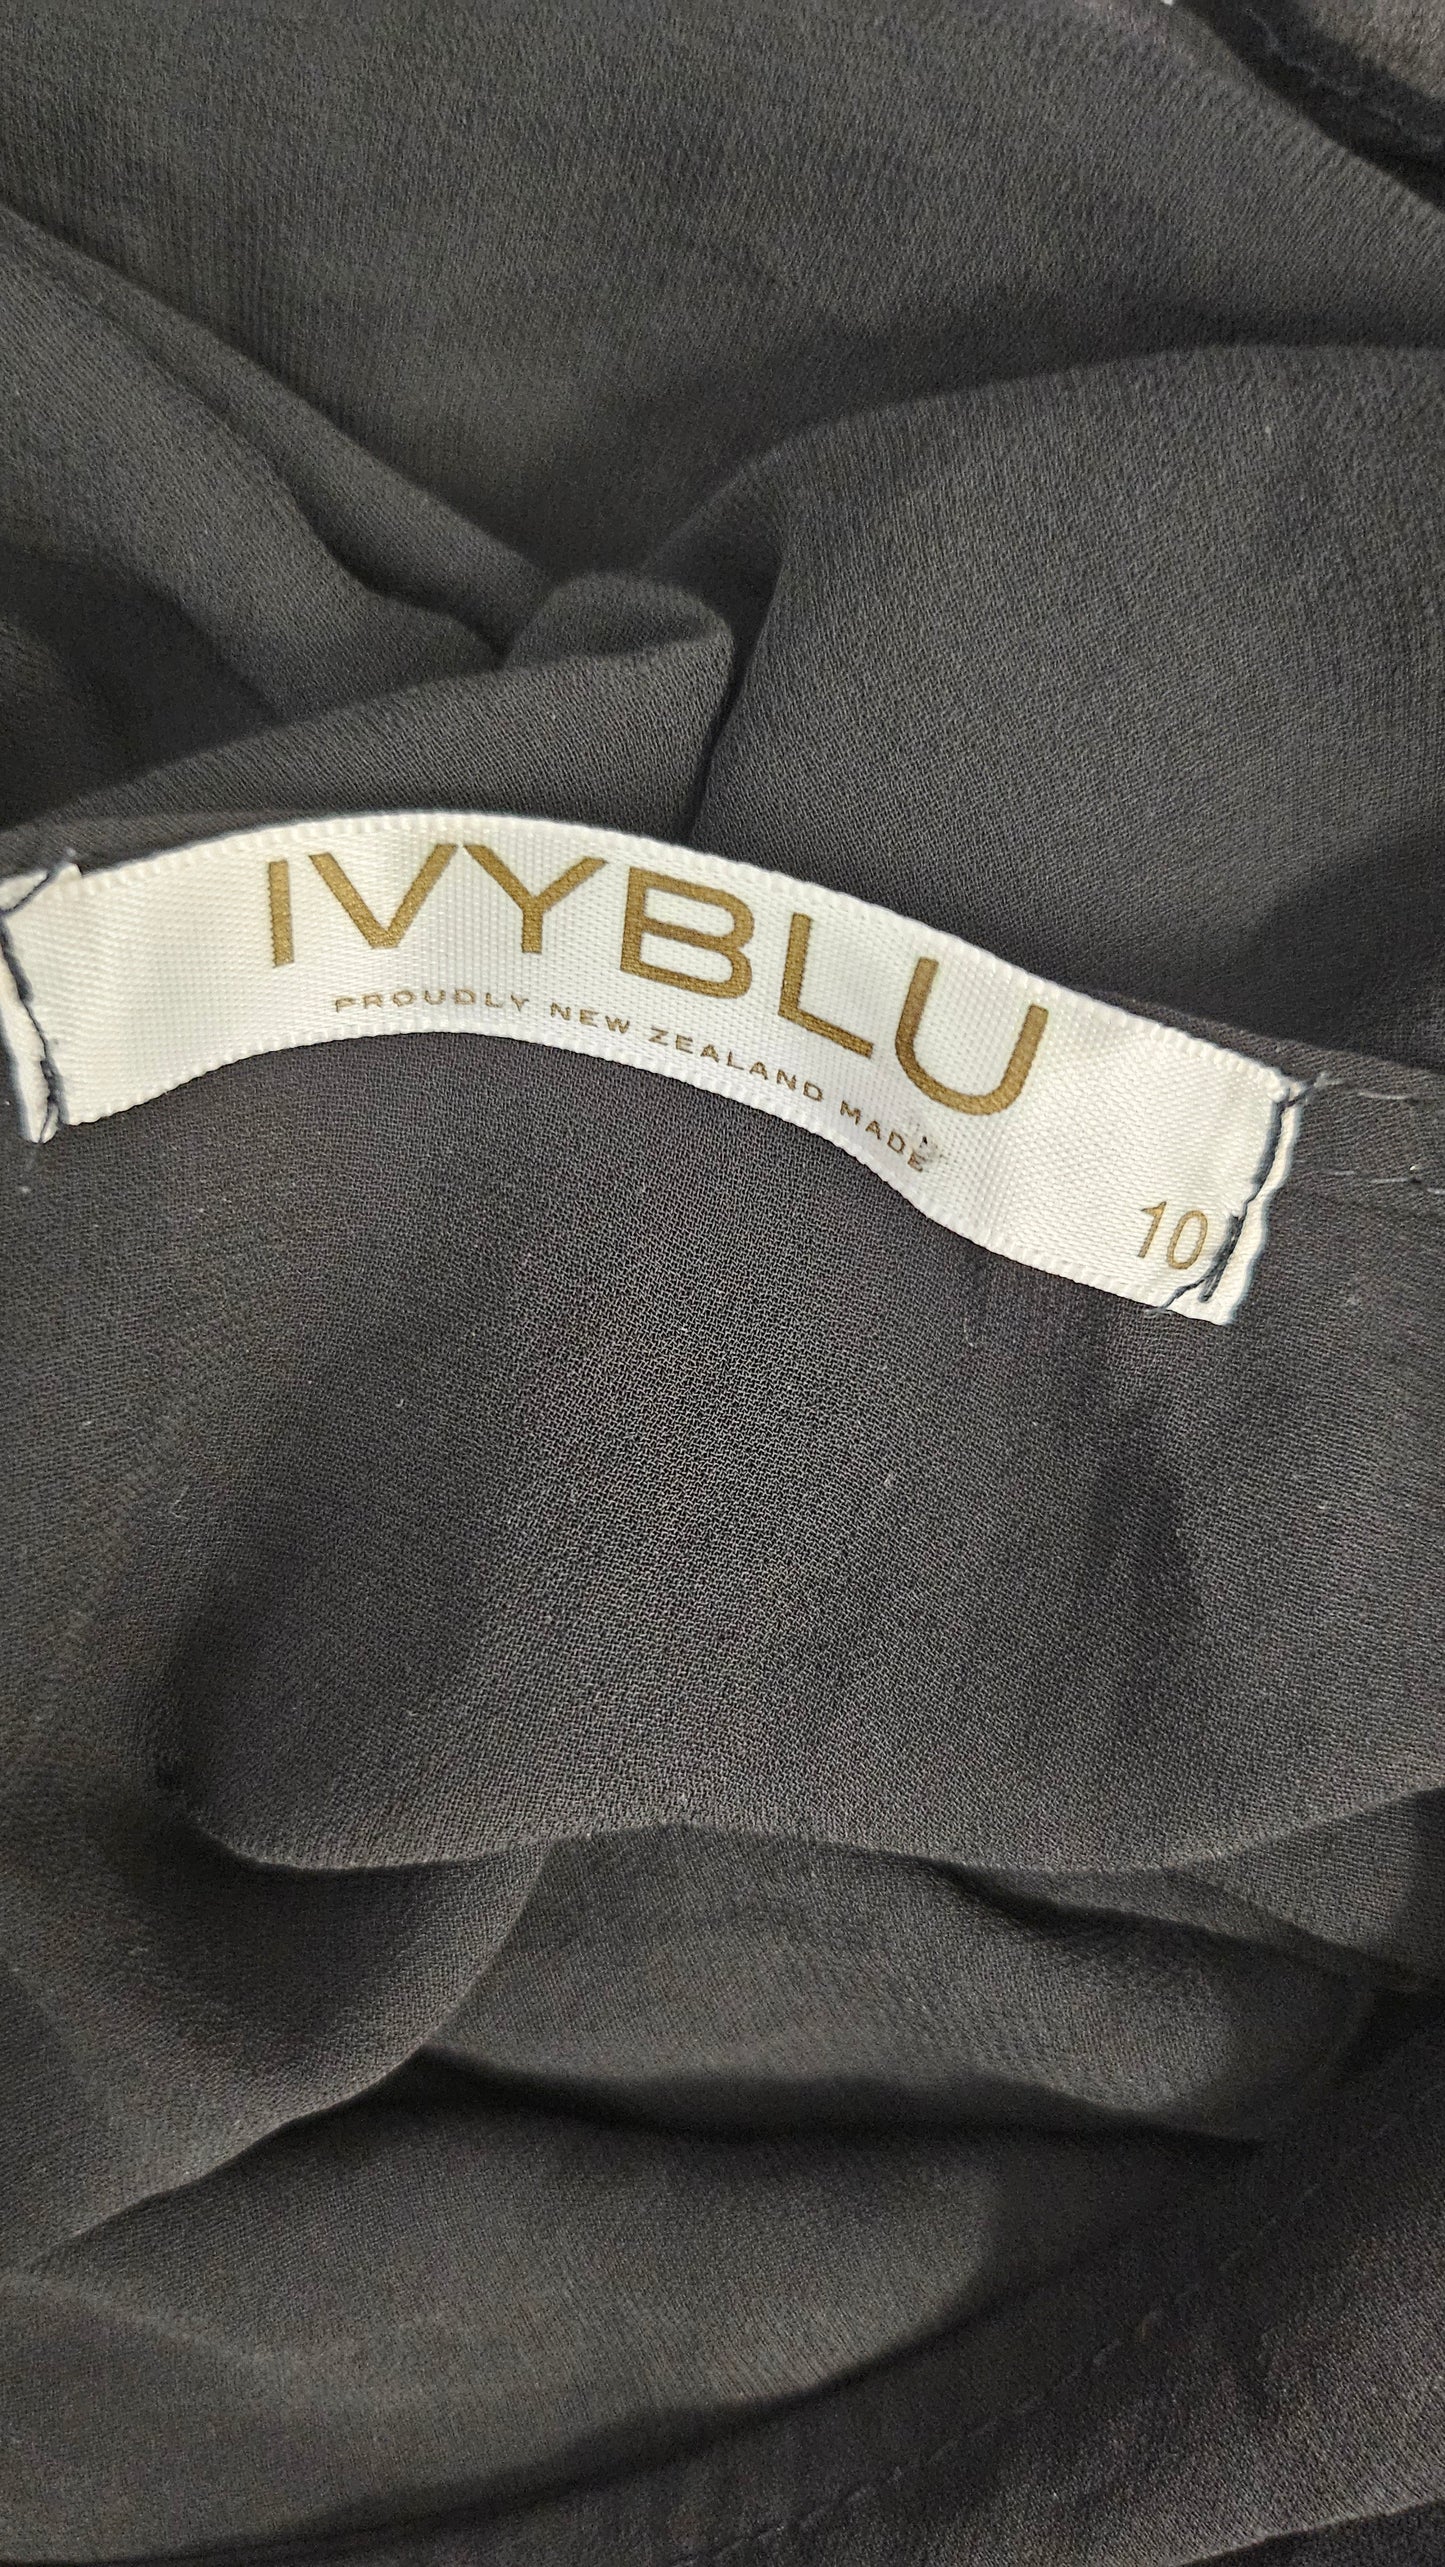 IvyBlu Black Sheer Top (10)